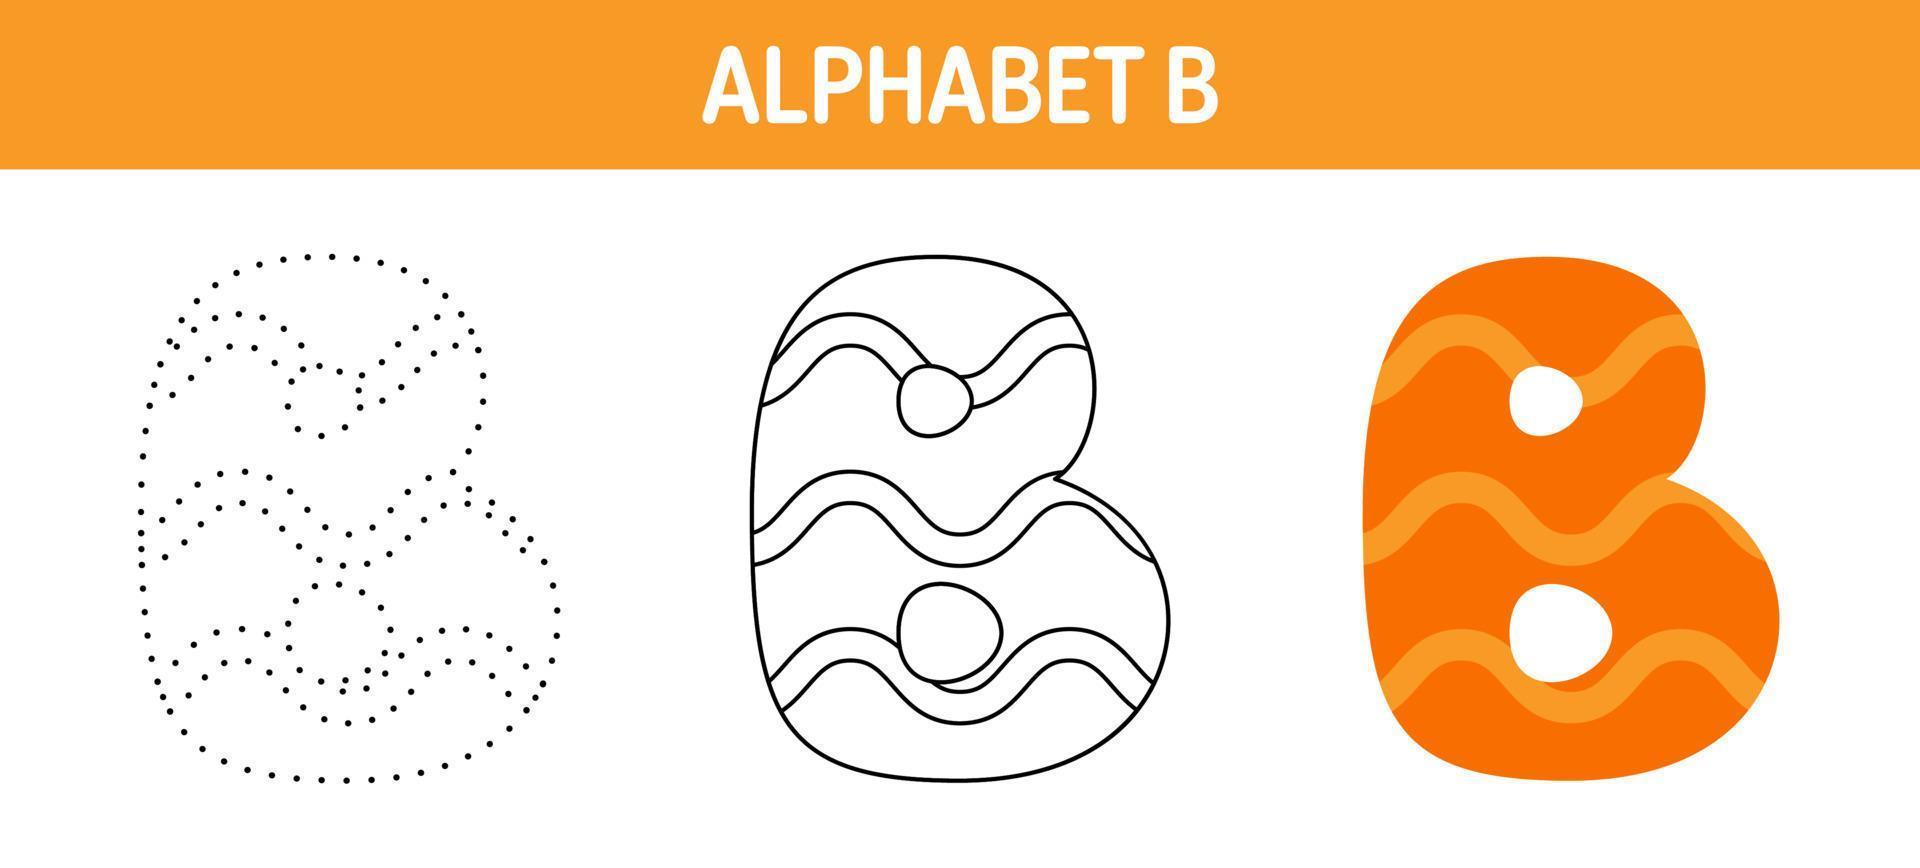 Arbeitsblatt zum nachzeichnen und ausmalen von alphabet b für kinder vektor